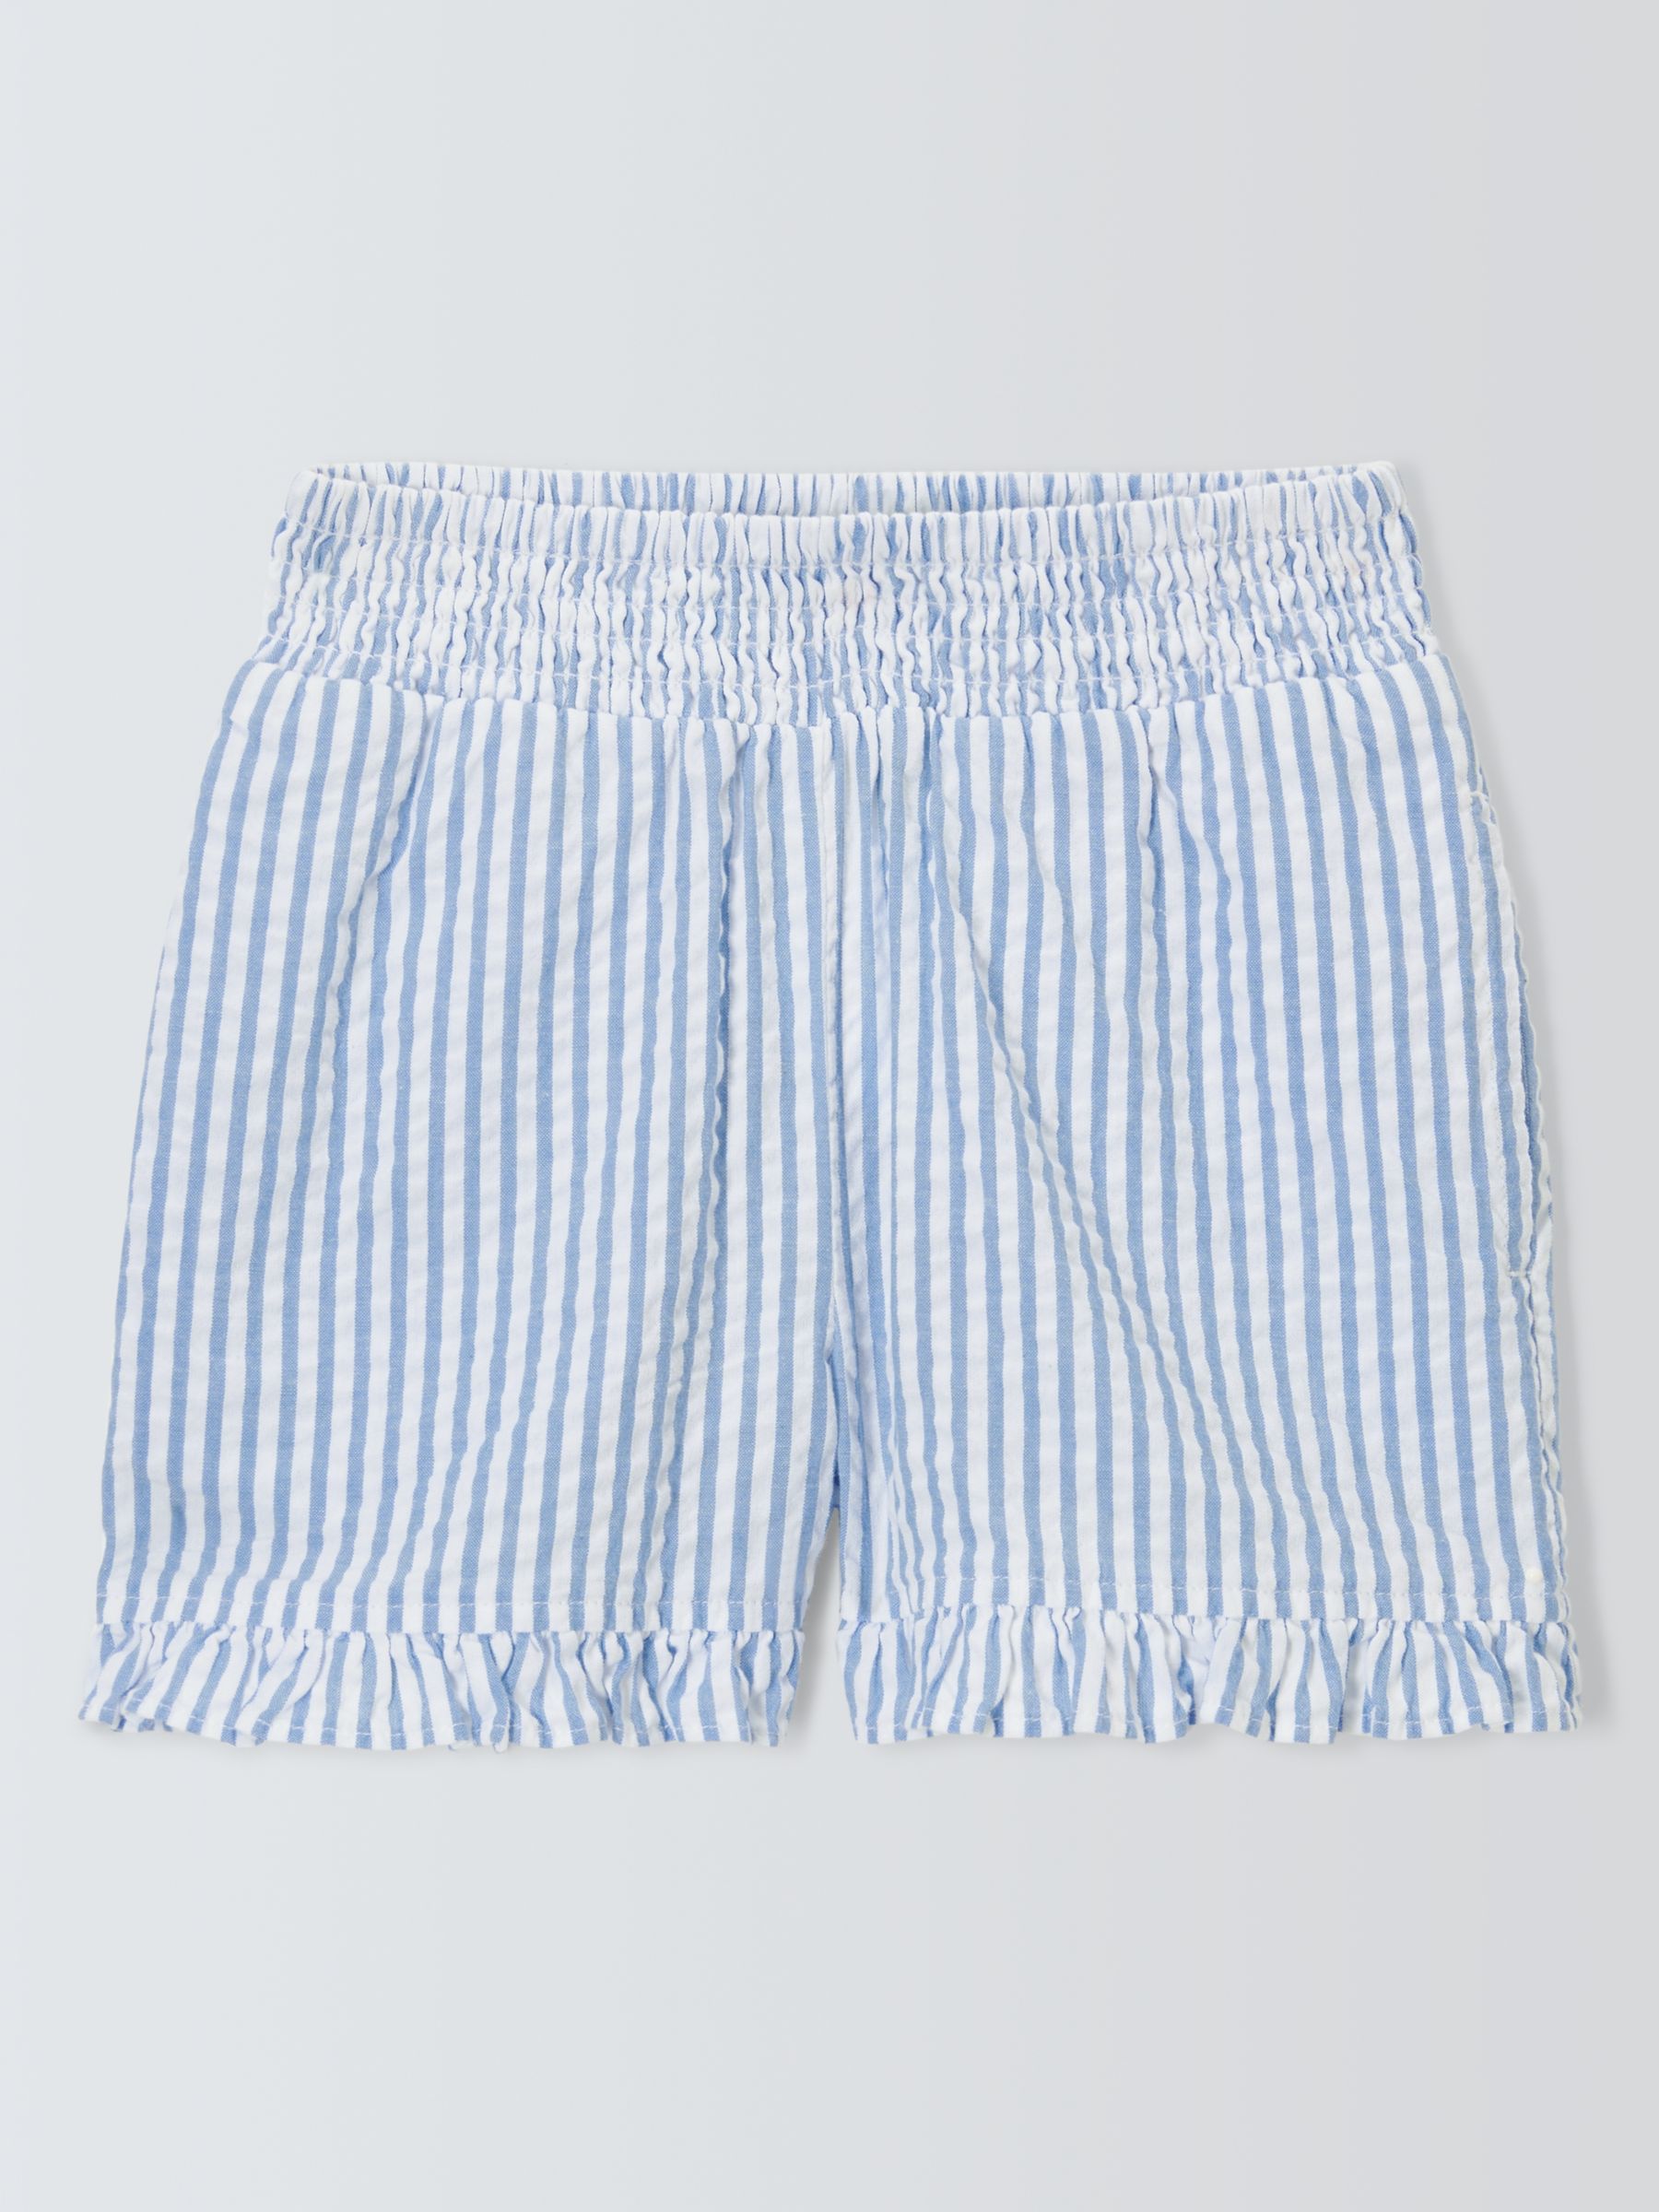 John Lewis Kids' Seersucker Stripe Shorts, Blue Bonnet, 10 years